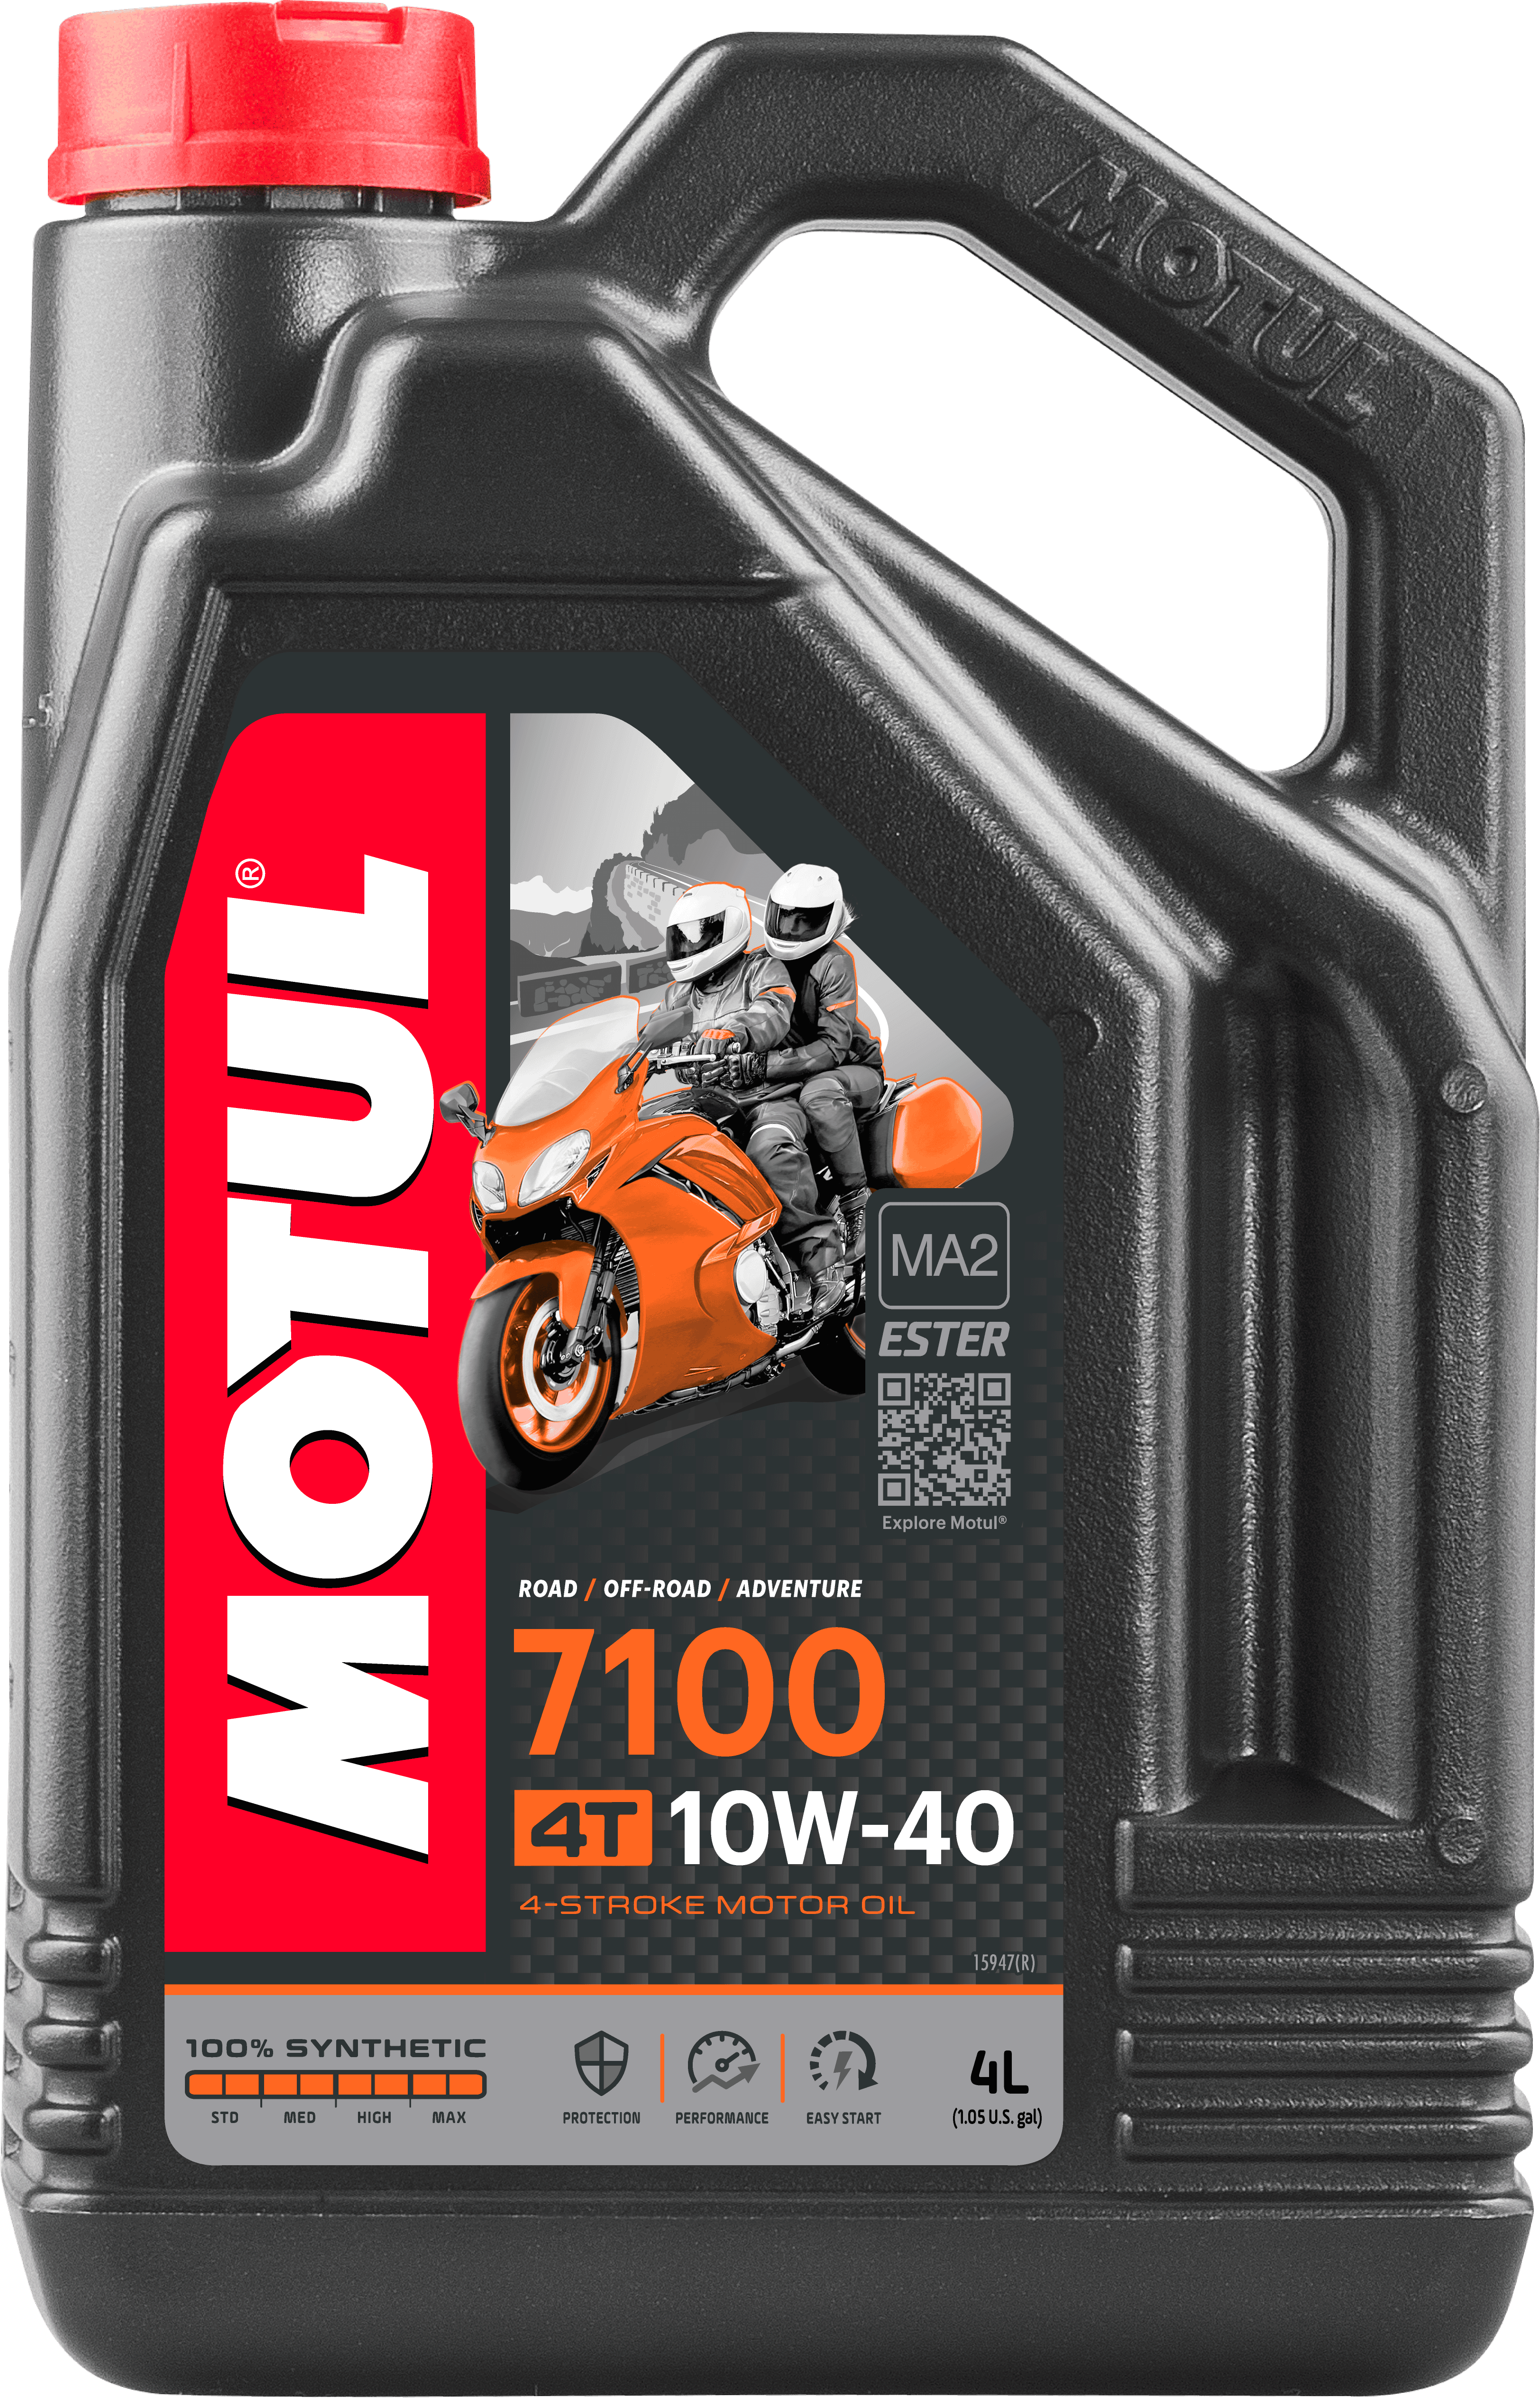 Aceite de moto MOTUL 5W30 300V 4L - Norauto